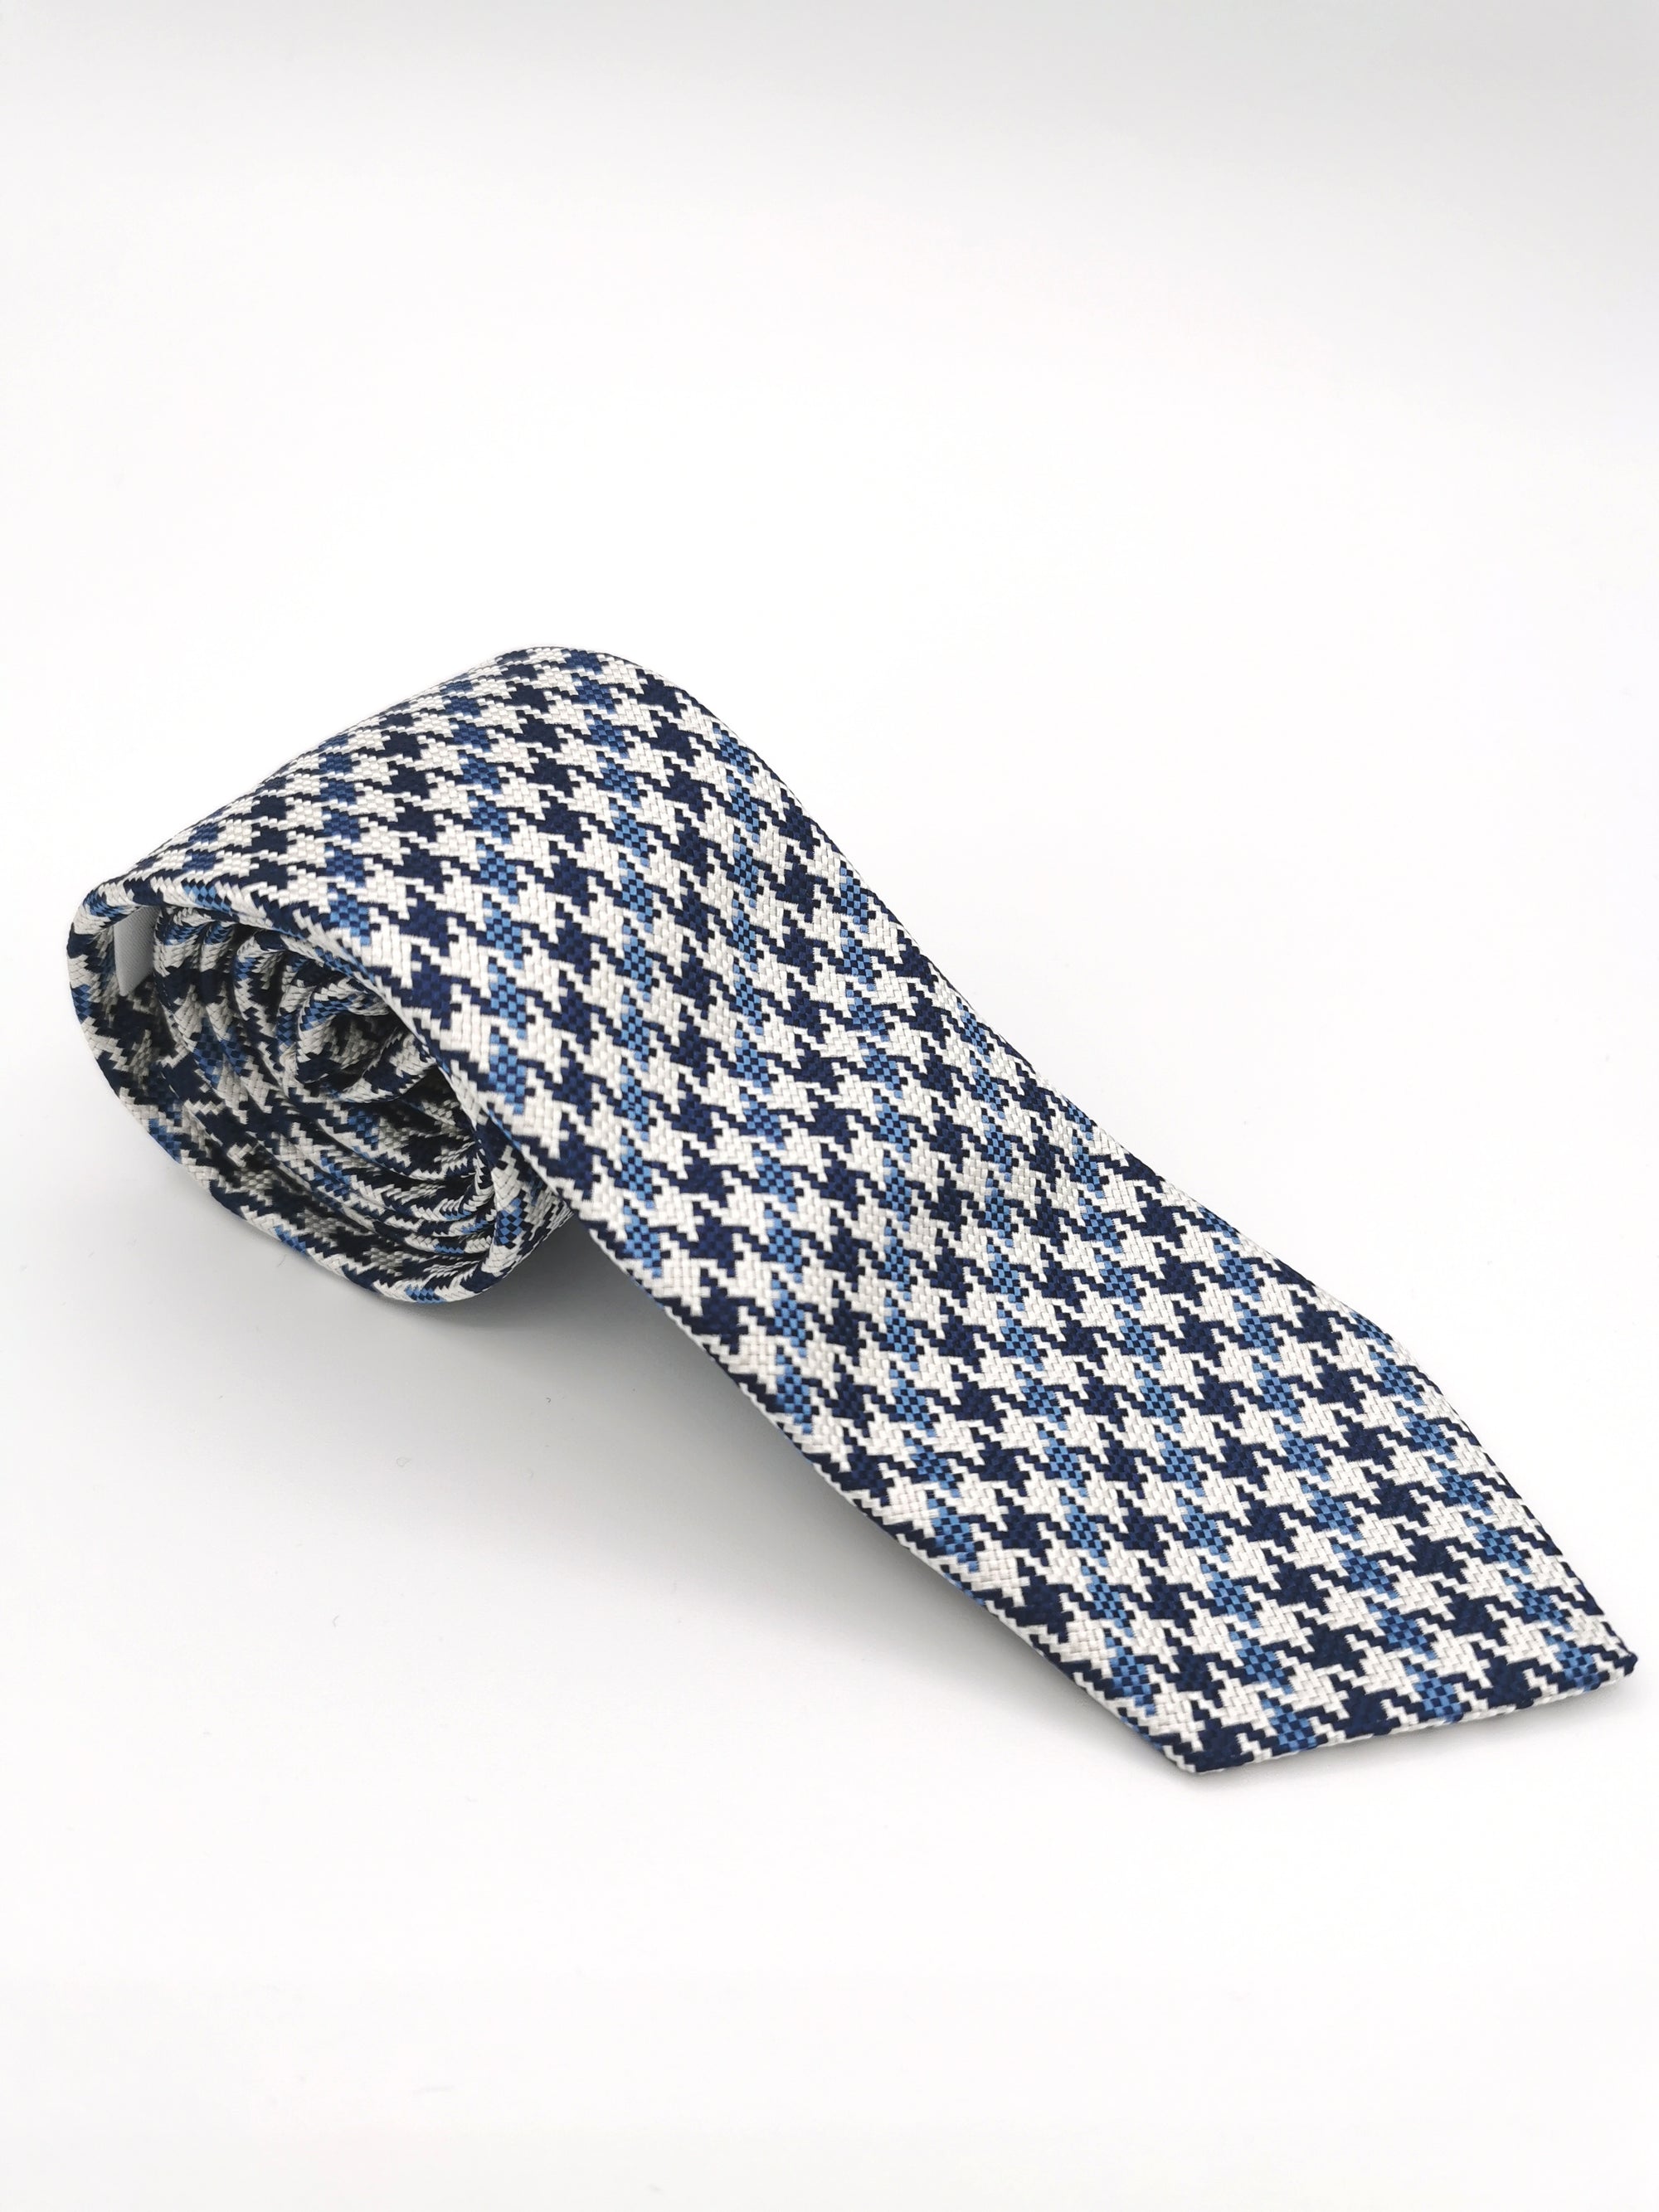 Cravate Ferala en soie à motif pied de poule bleu et blanc